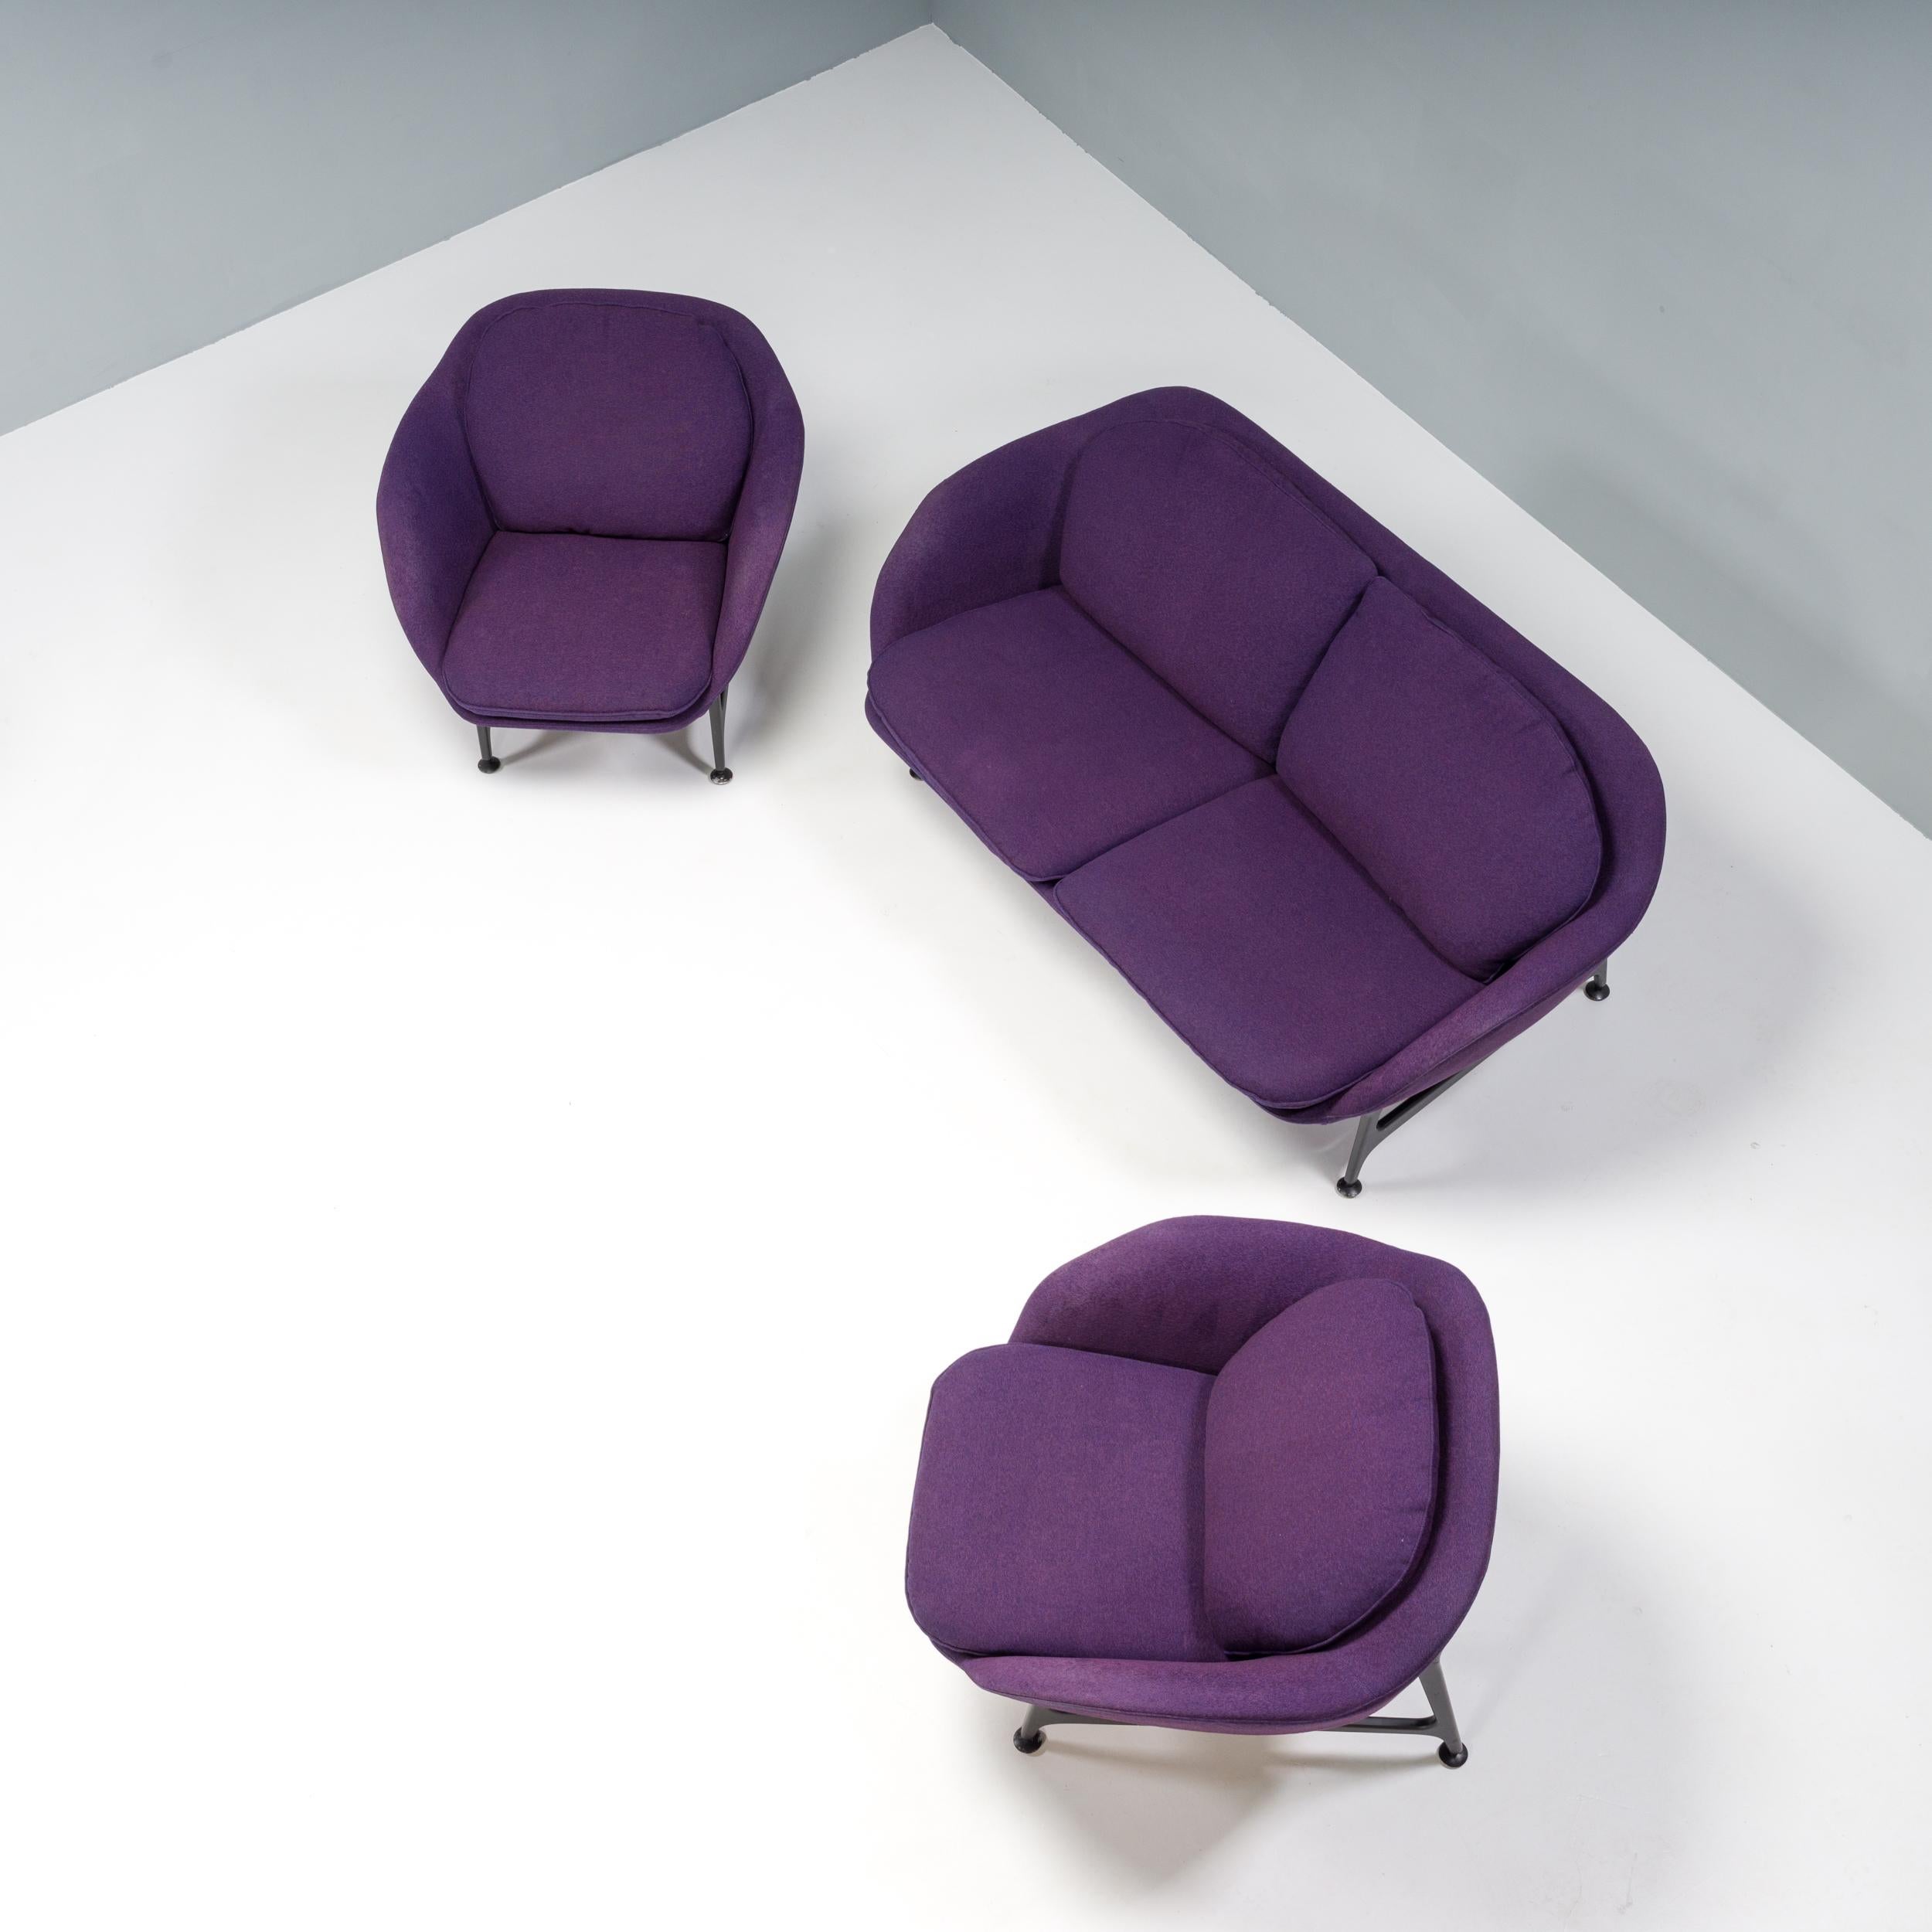 Présentée pour la première fois au Salone del Mobile en 2014, la collection de sièges Vico a été conçue par Jaime Hayon pour Cassina et baptisée du nom de son fils.

Inspiré par les archives de Cassina, le design de Hayon pour Vico est un équilibre